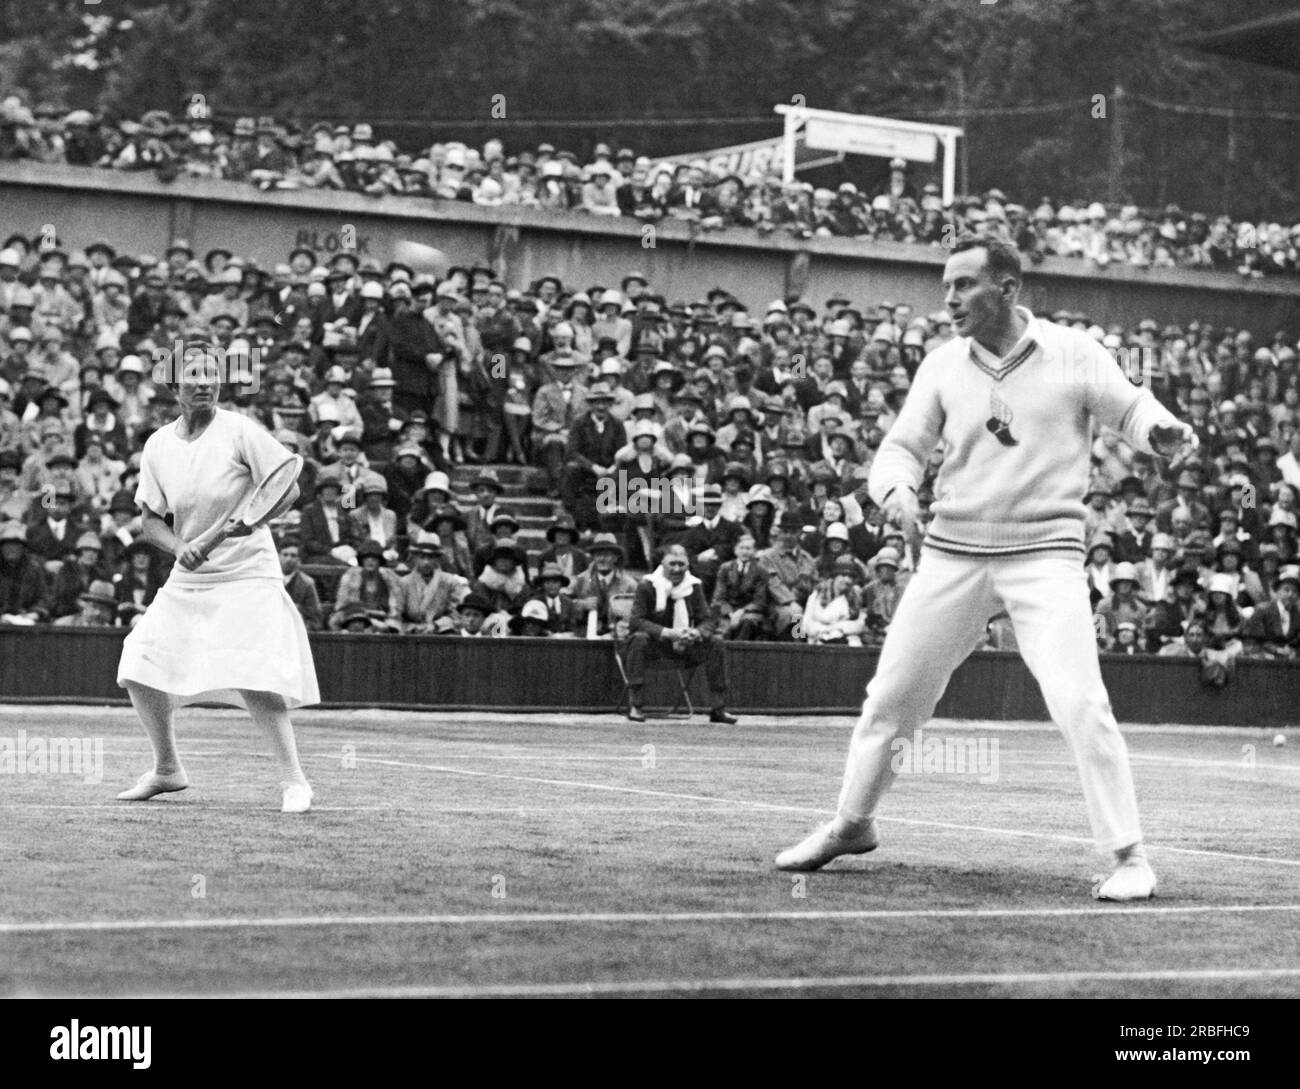 Londres, Angleterre : 1927 Américains Elizabeth Ryan et Frank Hunter jouent contre l'équipe britannique dans les championnats de tennis sur gazon à Wimbledon. Ils ont remporté le championnat de doubles mixtes. Banque D'Images